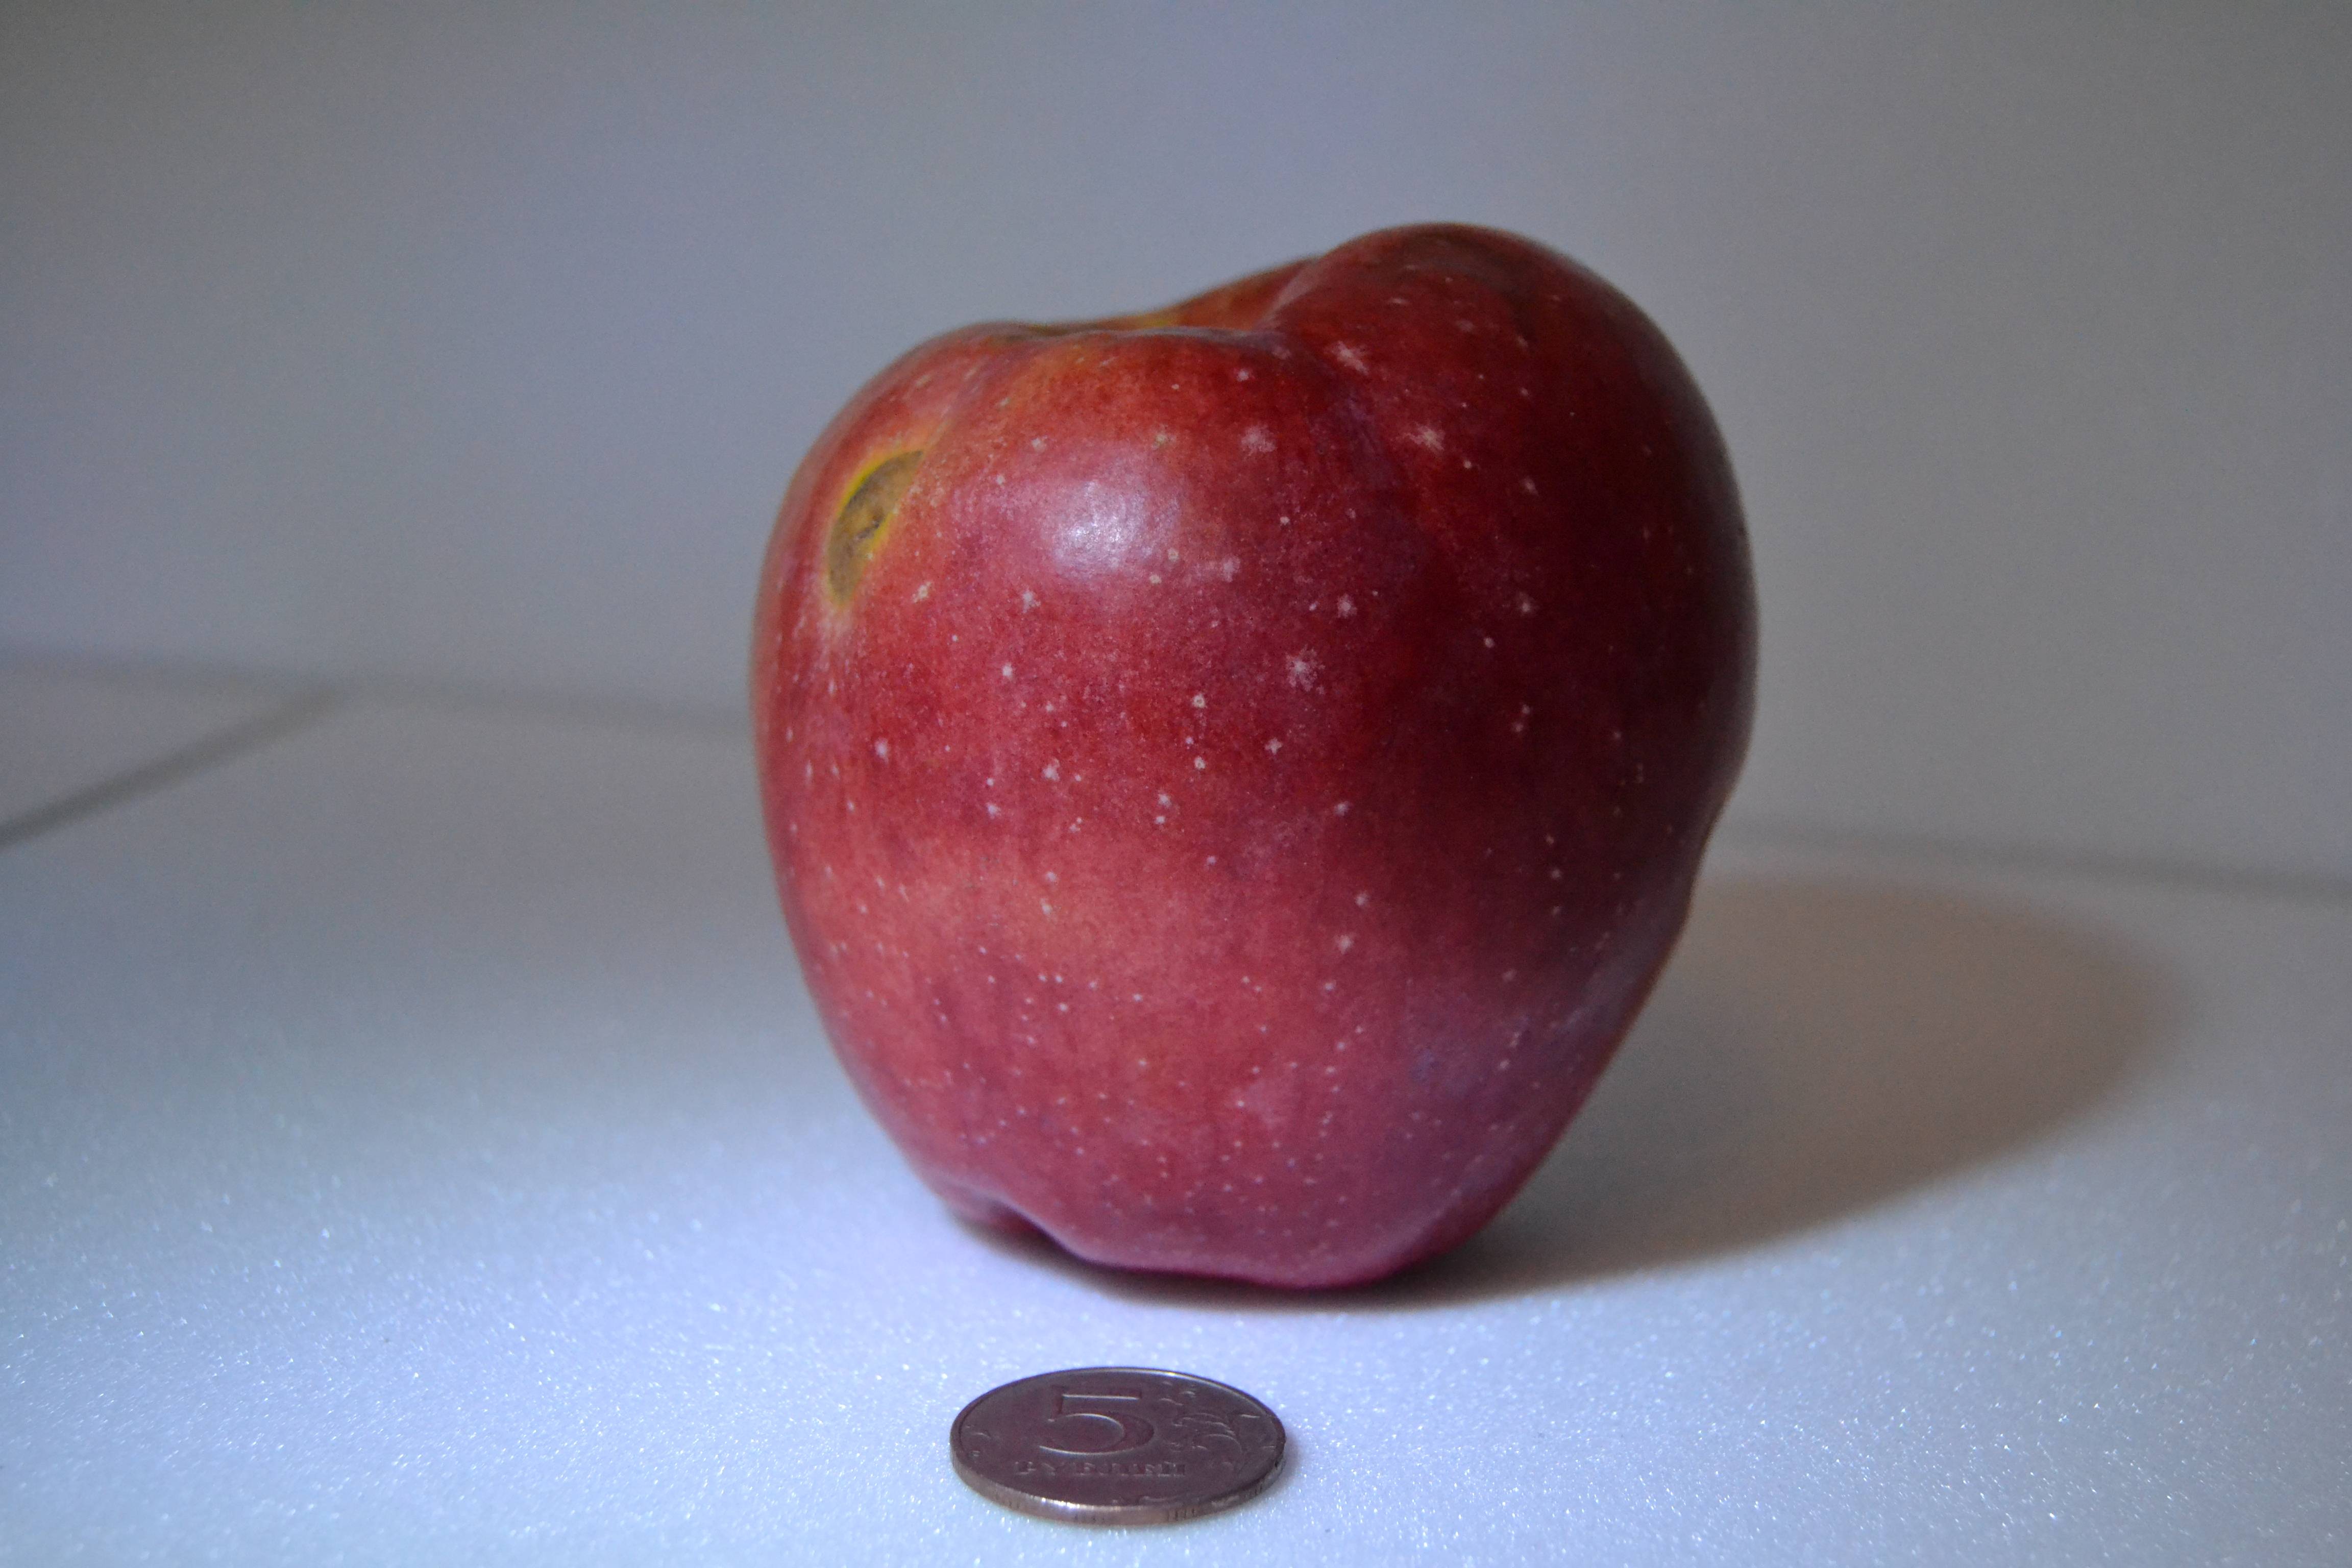 Сорт яблони солнышко: фото, отзывы, описание, характеристики.